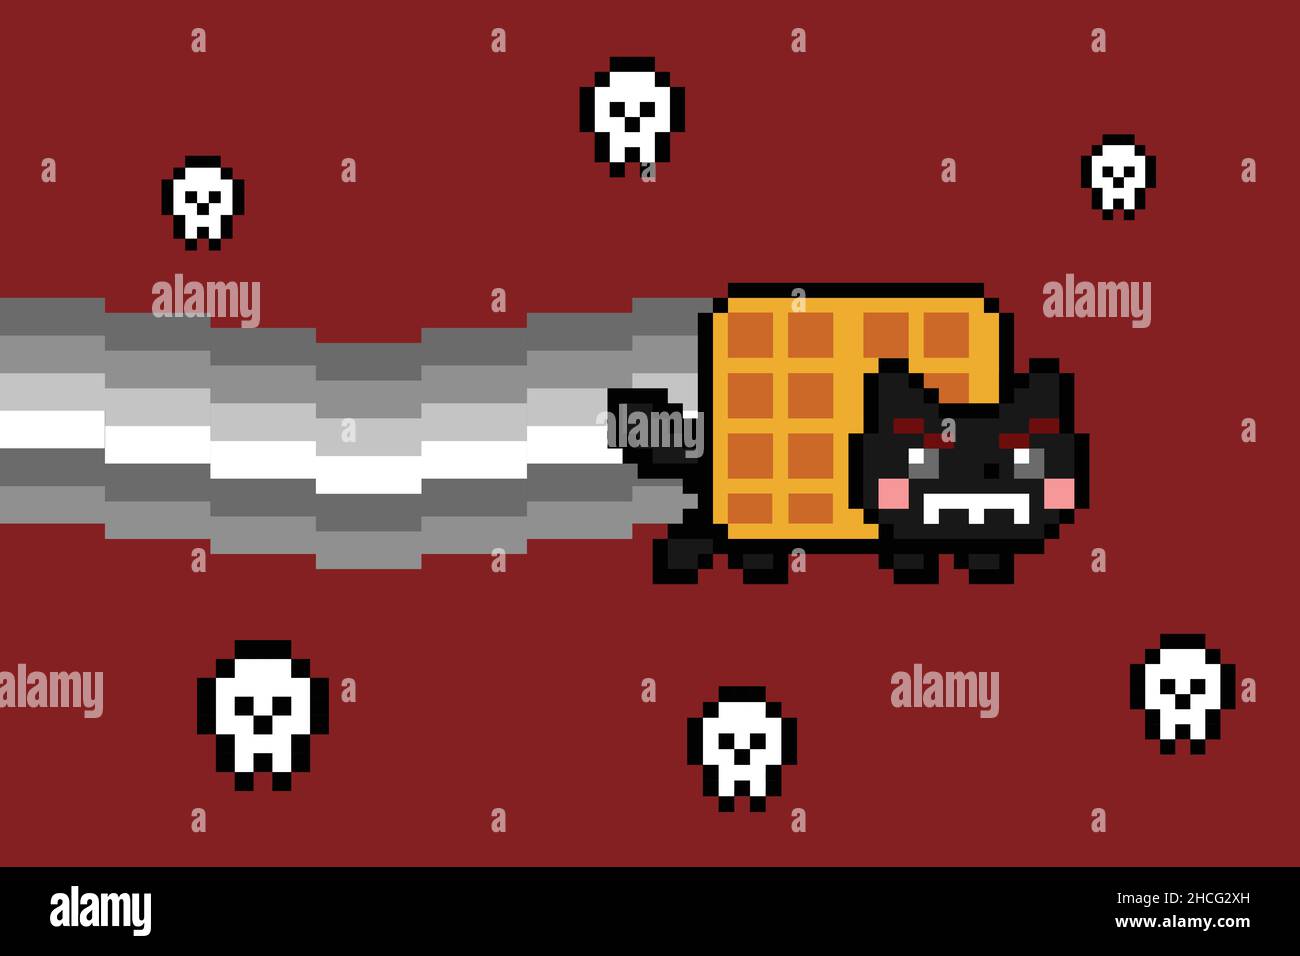 Böse schwarze Waffel Katze mit Rauch pixeligen Schädel Meme schweben auf rotem Hintergrund. Farbenfrohe 8-Bit-Pixel-Grafik. Flache digitale Vektorgrafik Stock Vektor